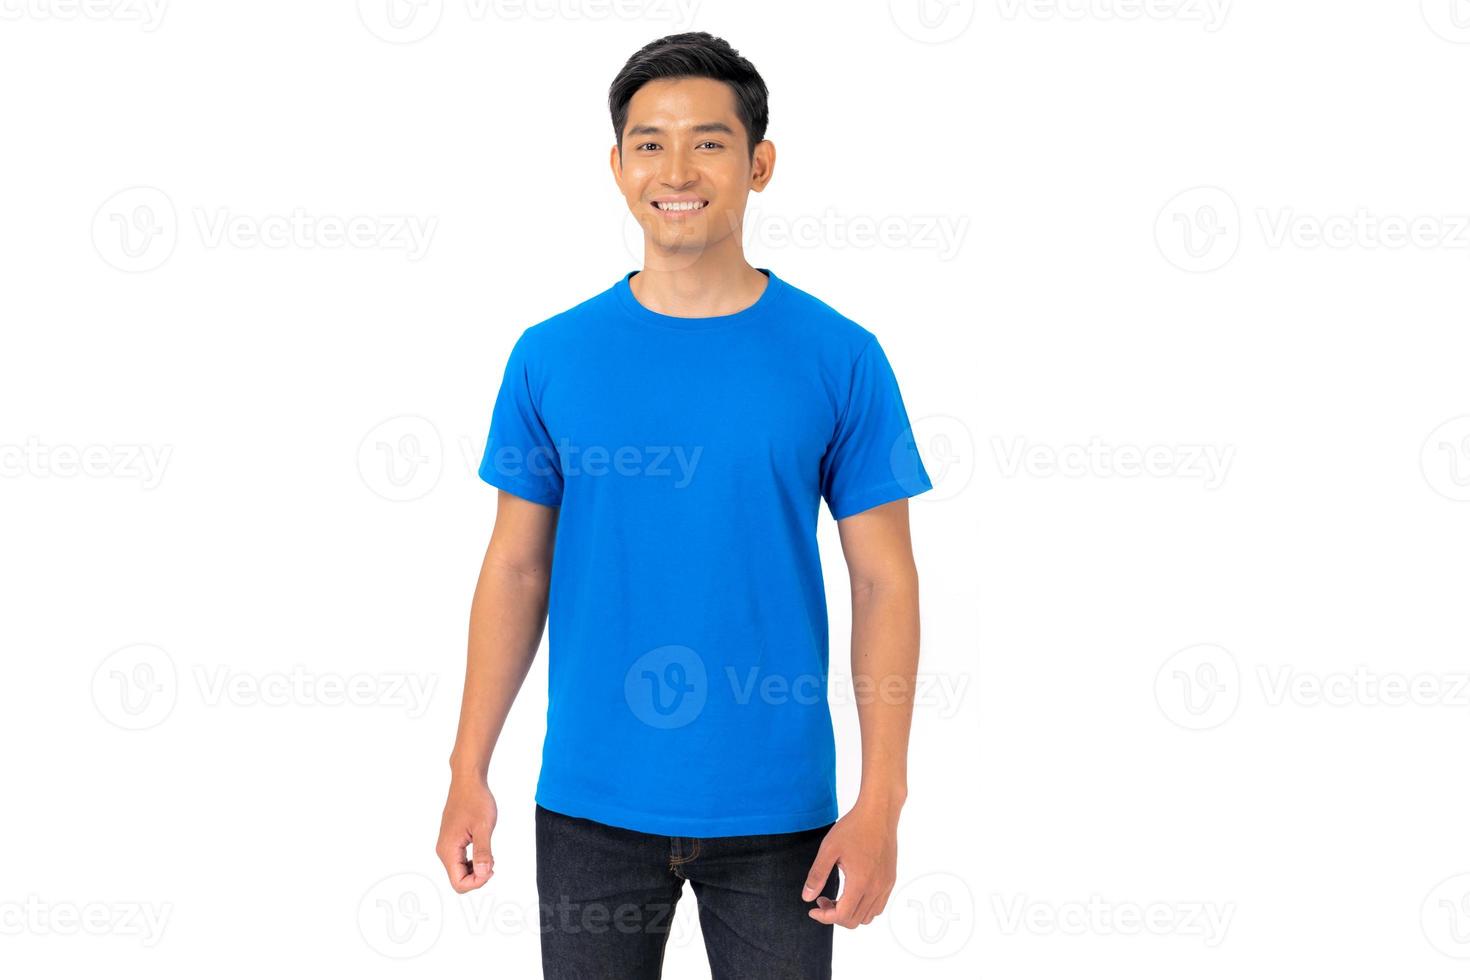 jovem em camiseta azul sobre fundo branco foto